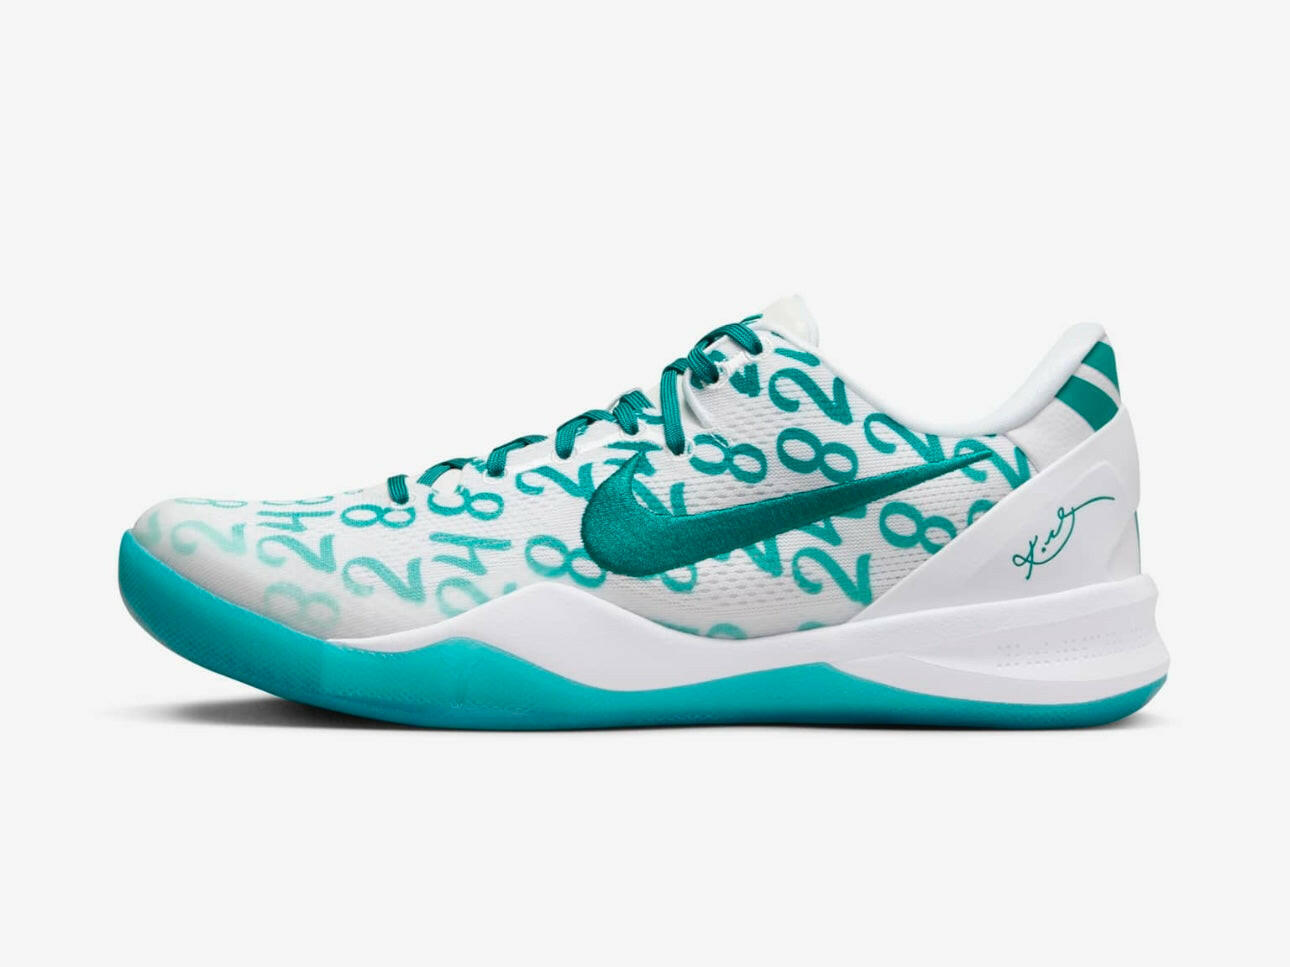 Zapatillas de baloncesto Kobe 8 Protro blancas 'Radiant Emerald' para hombre